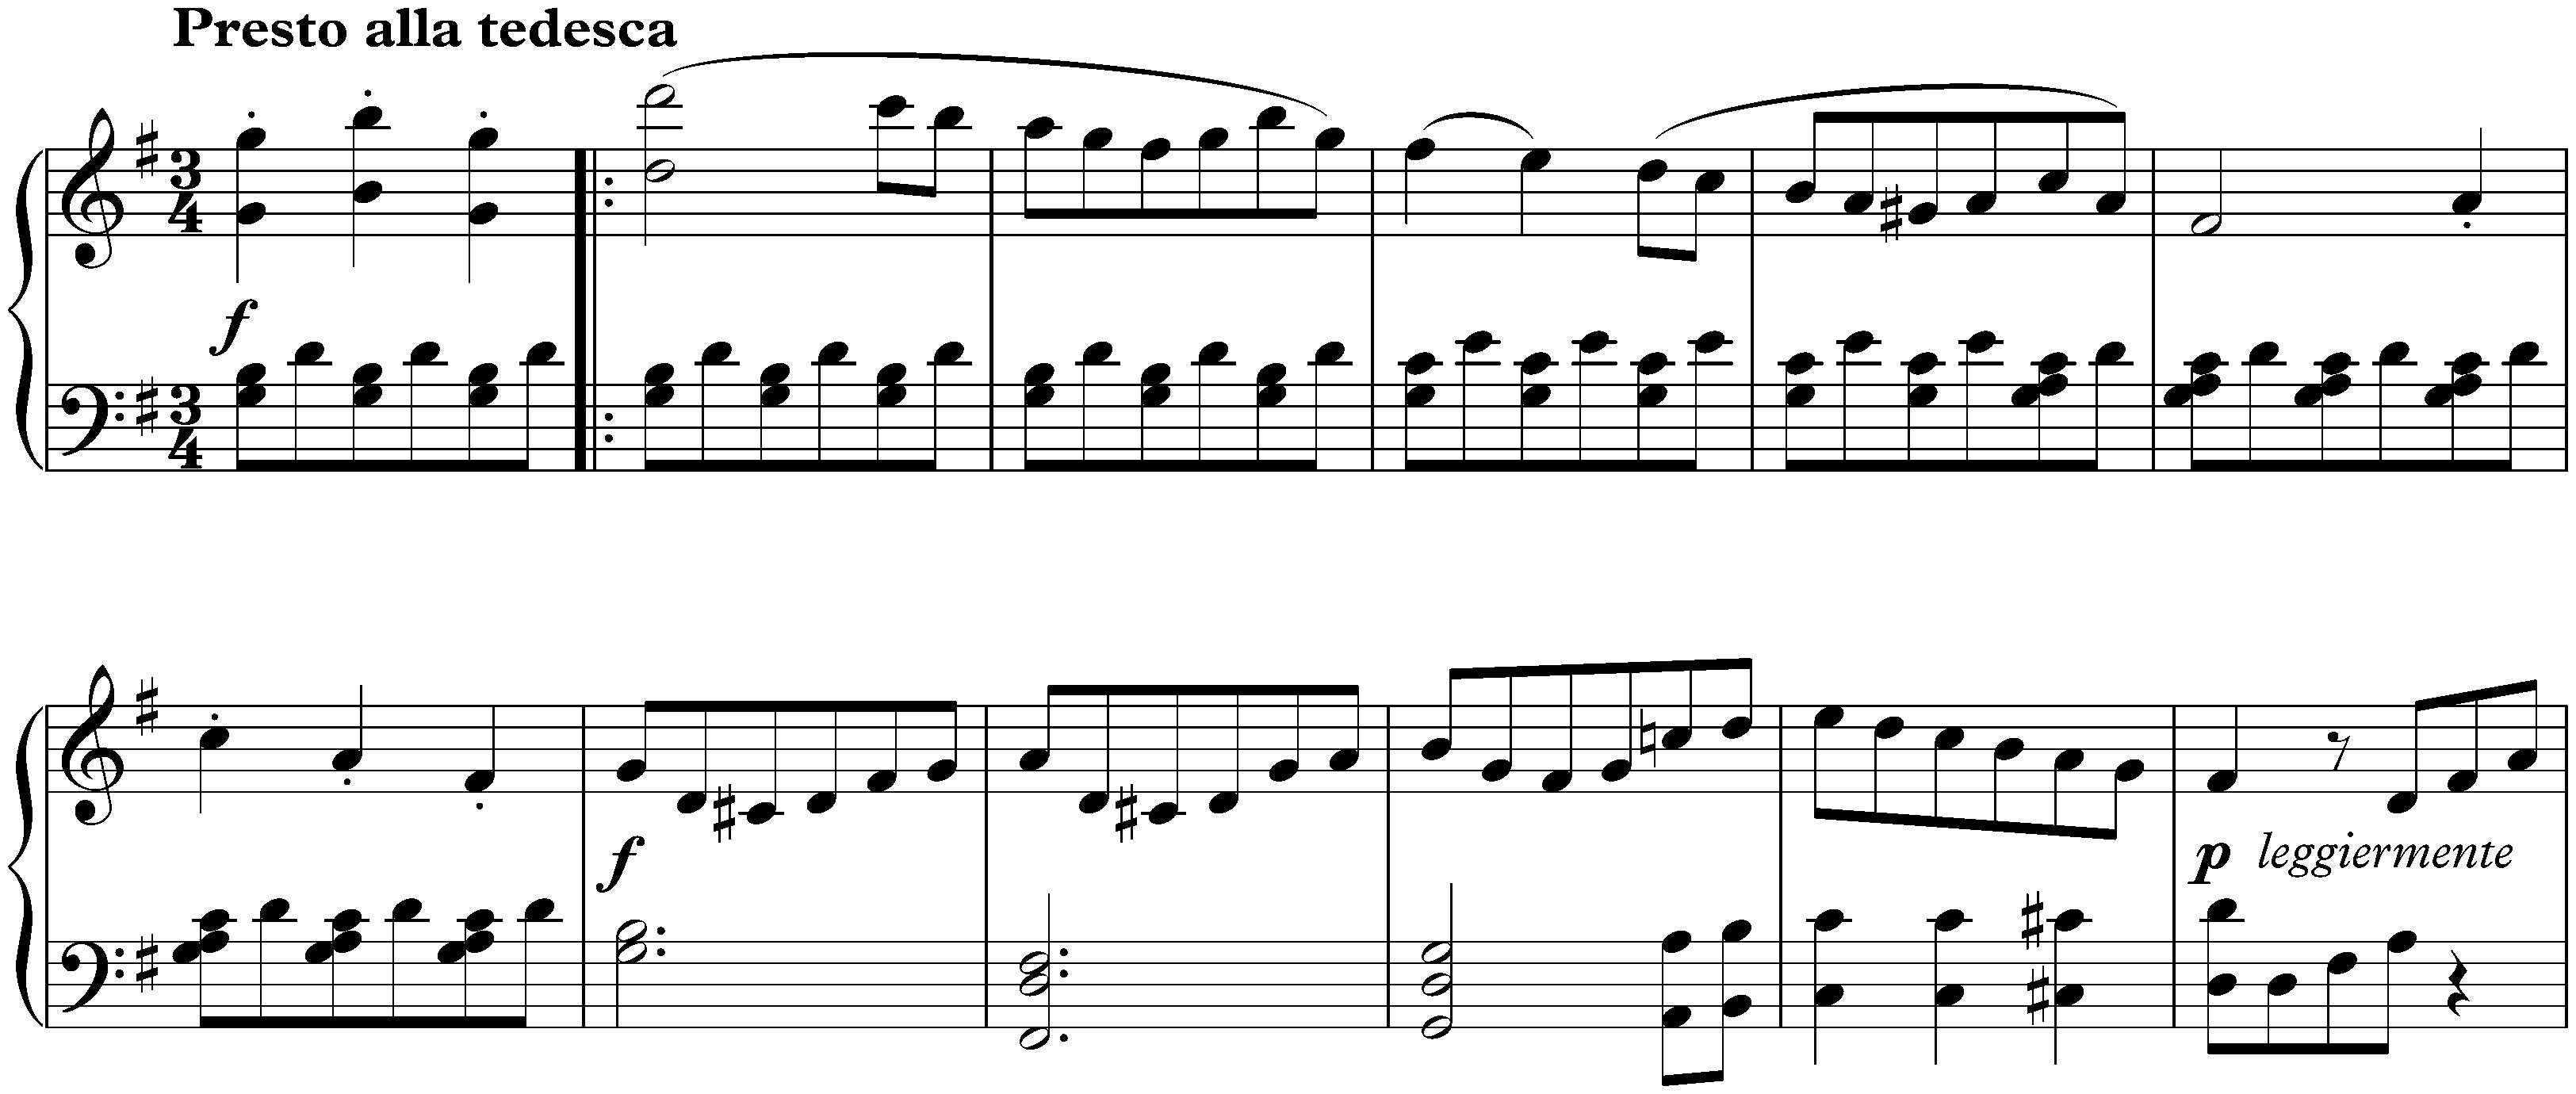 Sonata no. 25 in G major, op. 79; 1. Presto alla tedesca